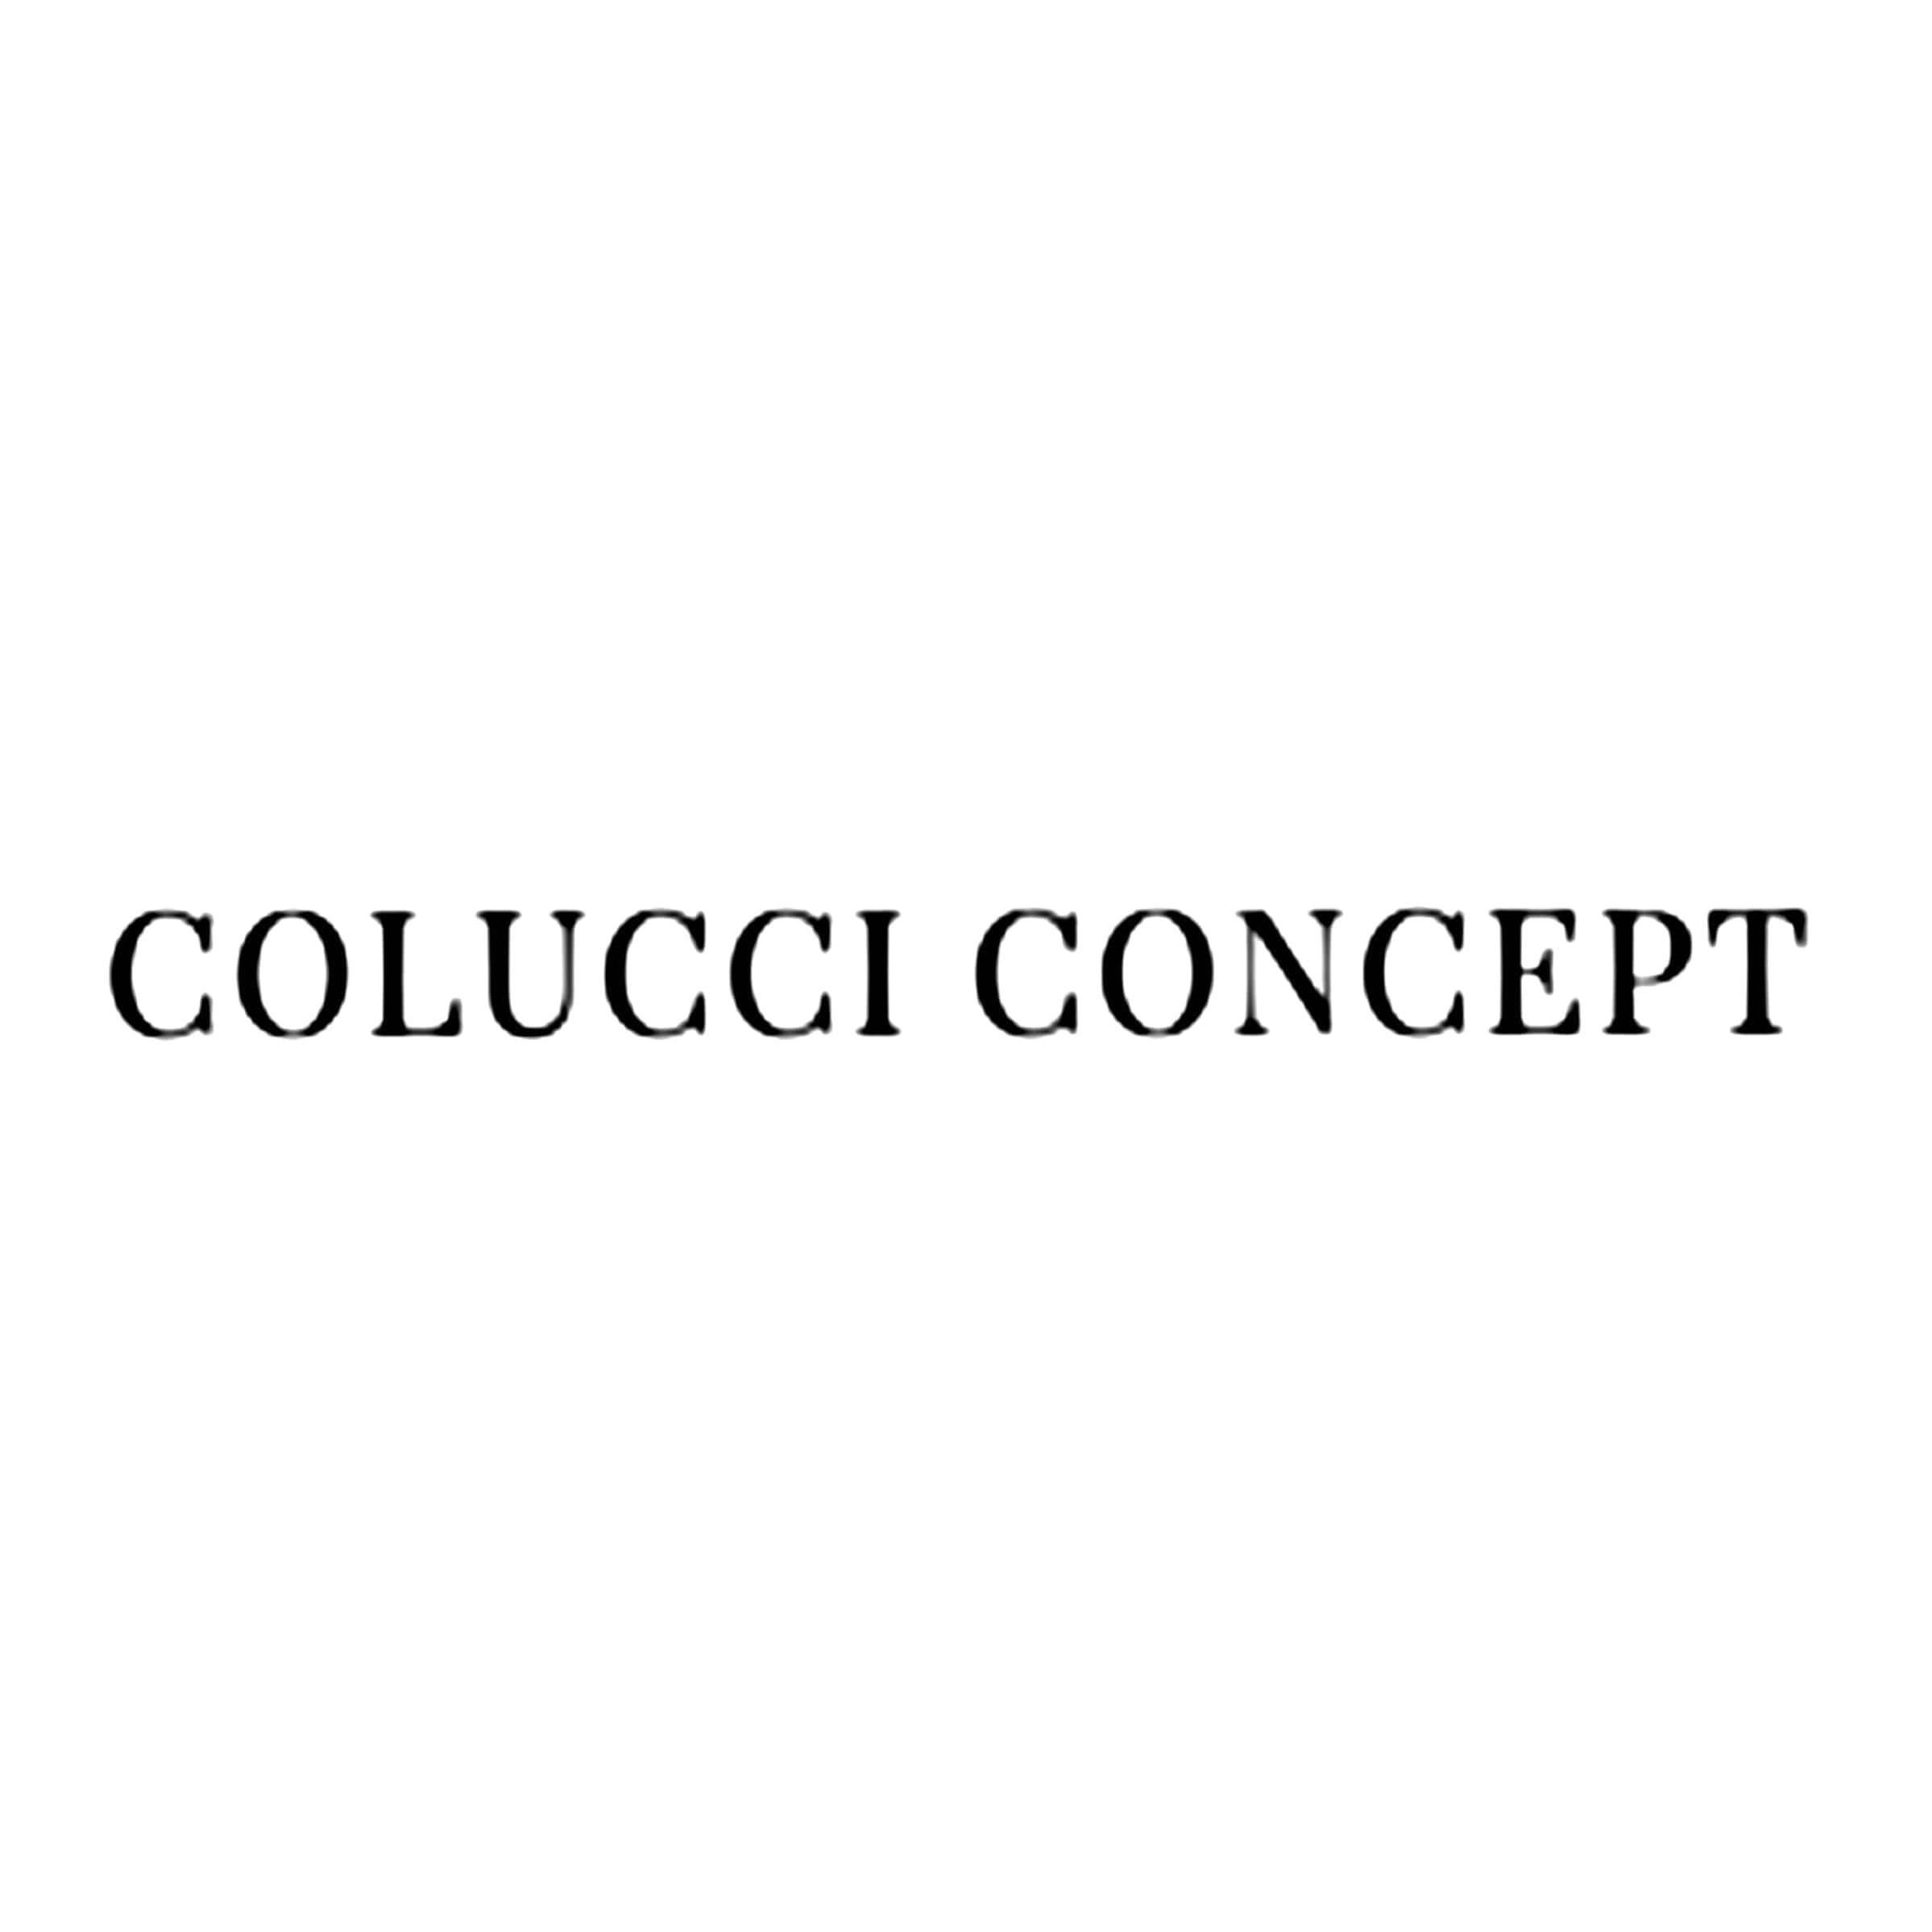 Colucci Concept